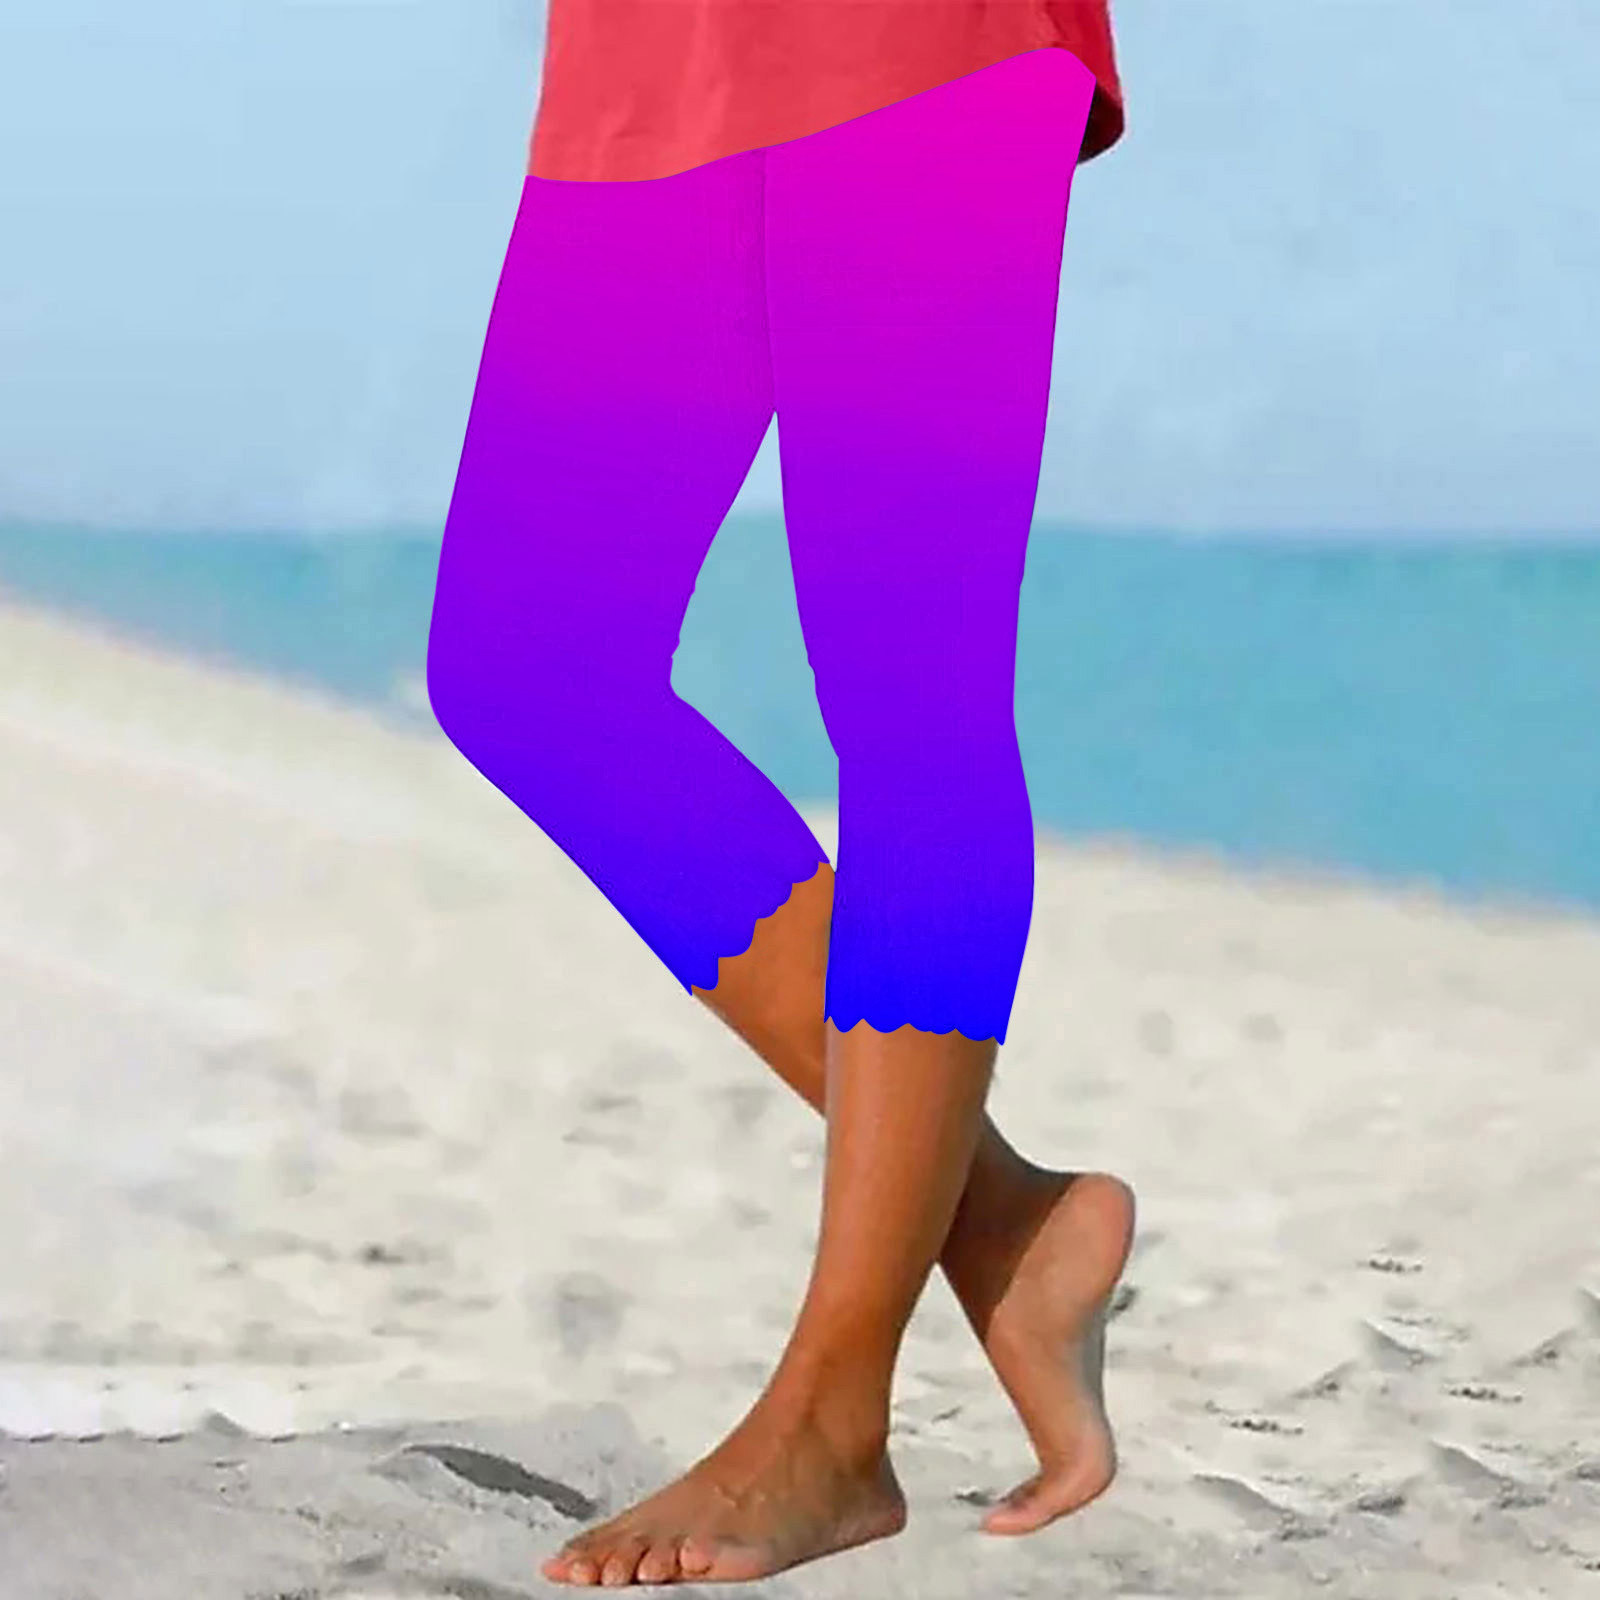 RYRJJ Tie Dye Capri Leggings for Women High Waisted Stretch Knee Length ...